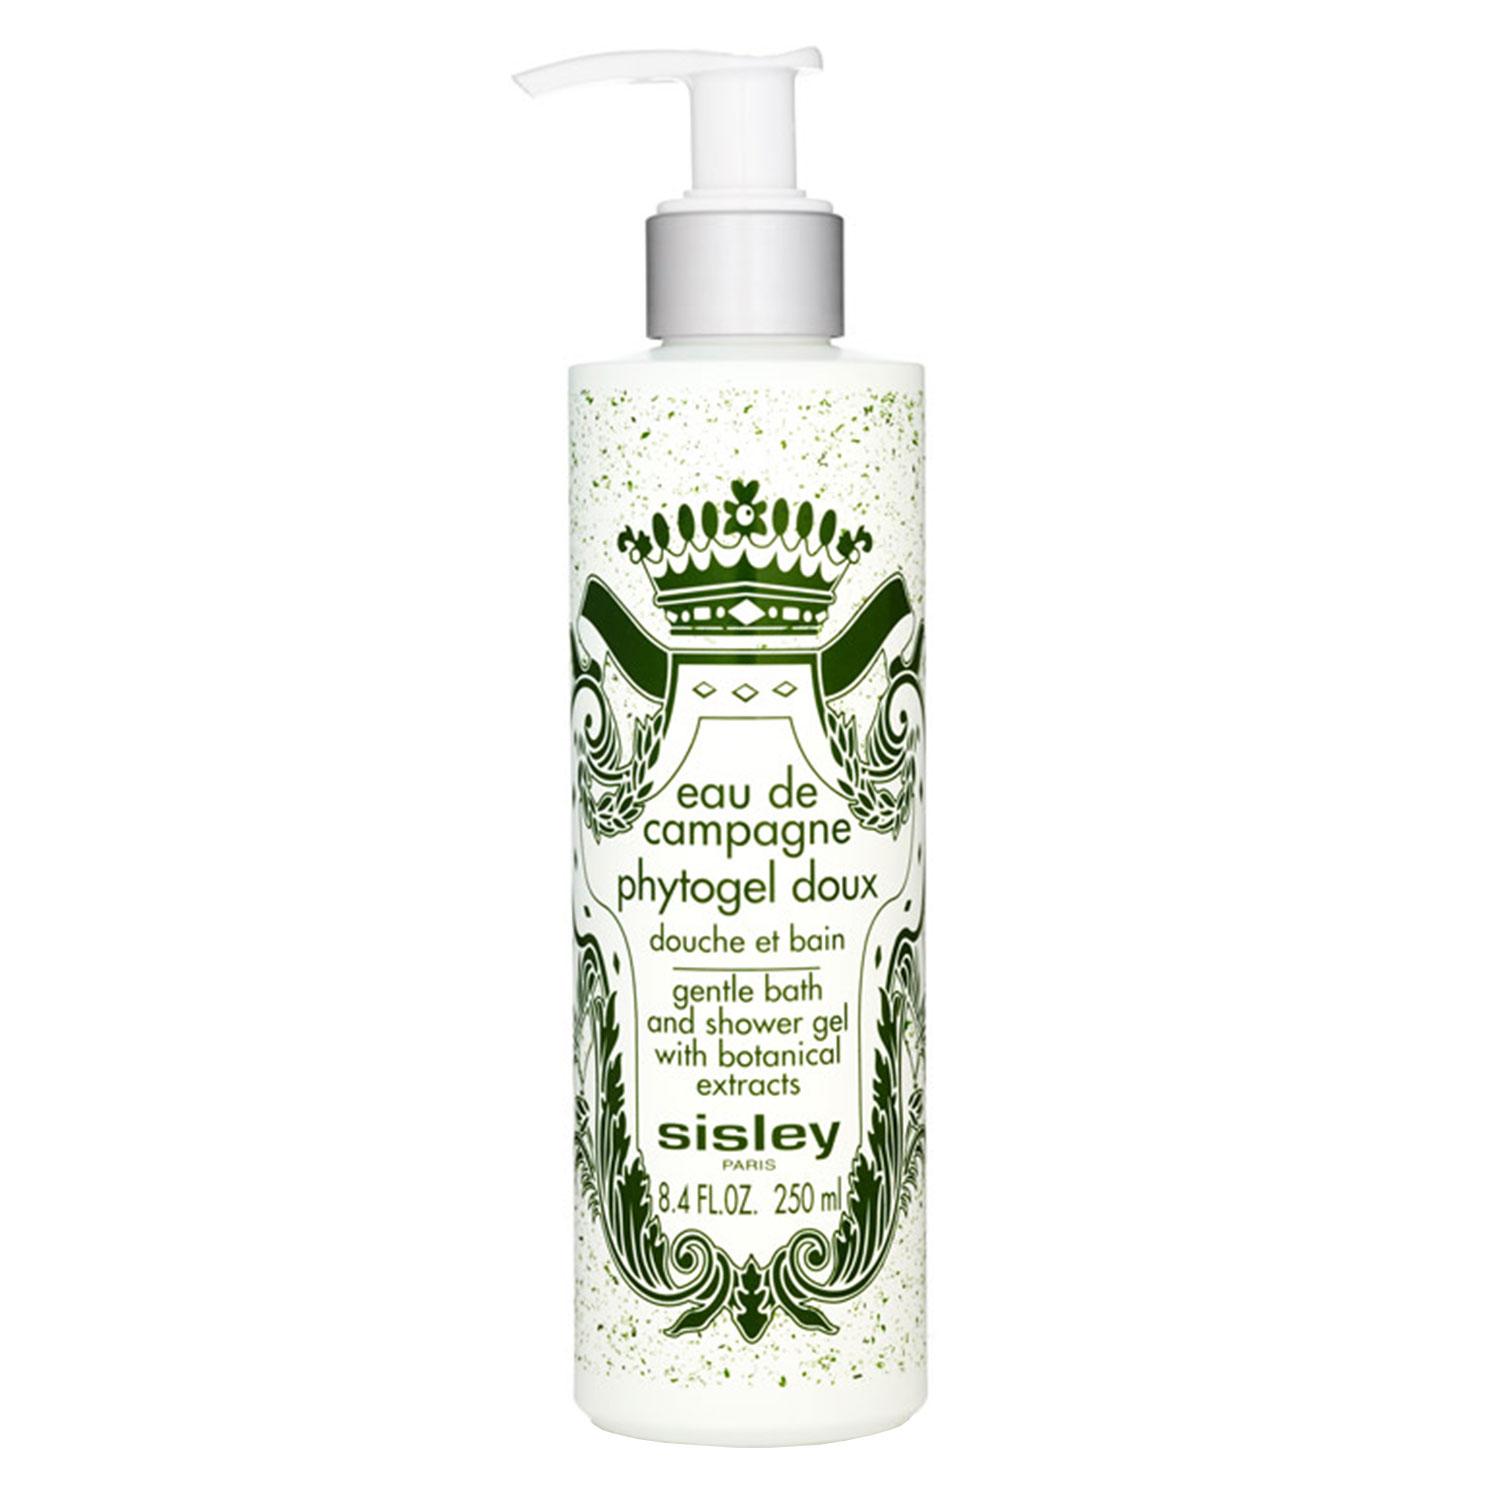 Sisley Fragrance - Eau de Campagne Phytogel doux Douche et Bain